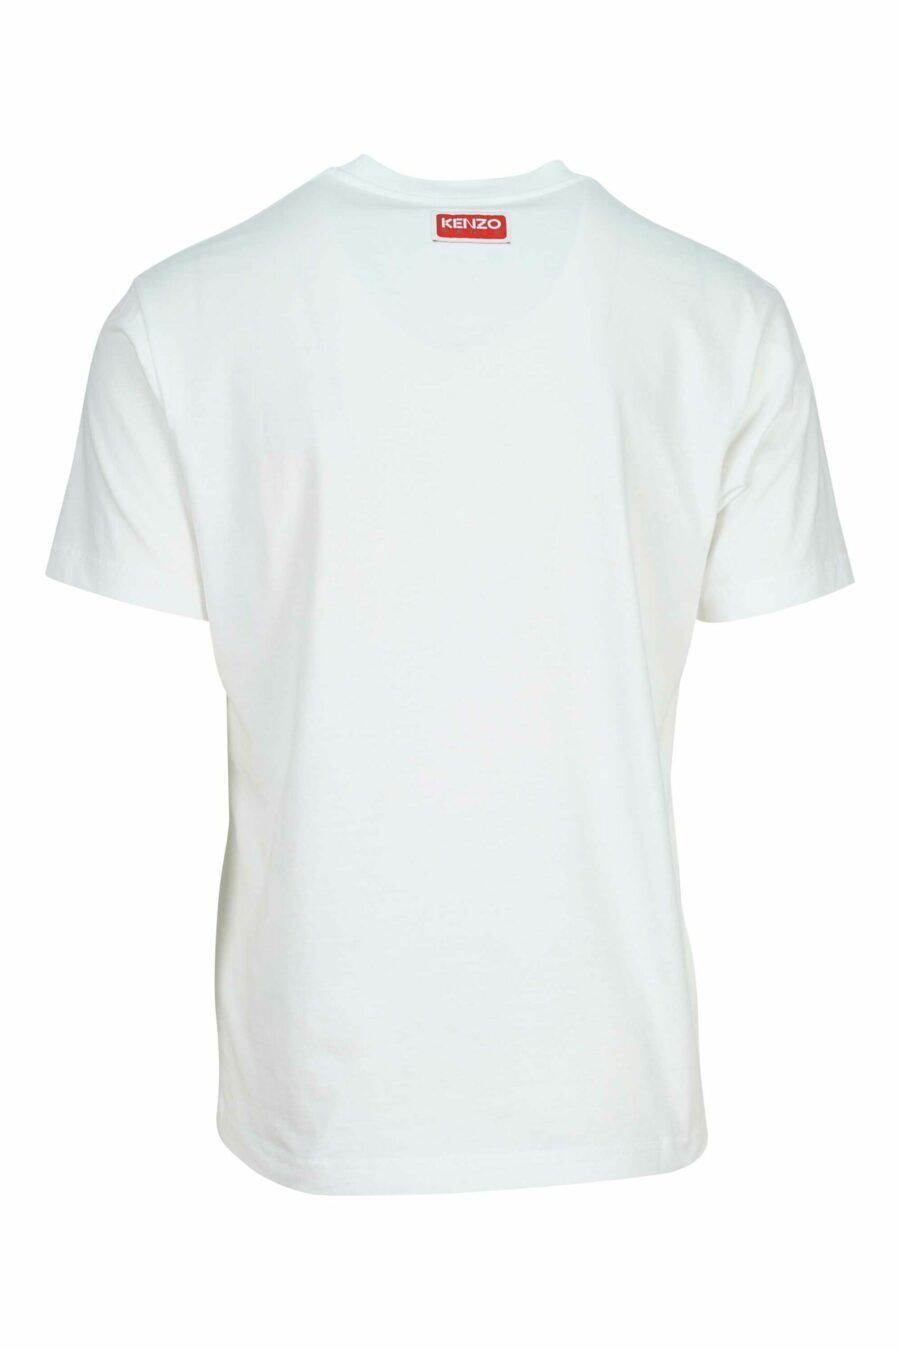 T-shirt blanc avec maxilogo "kenzo elephant" - 3612230625501 1 scaled